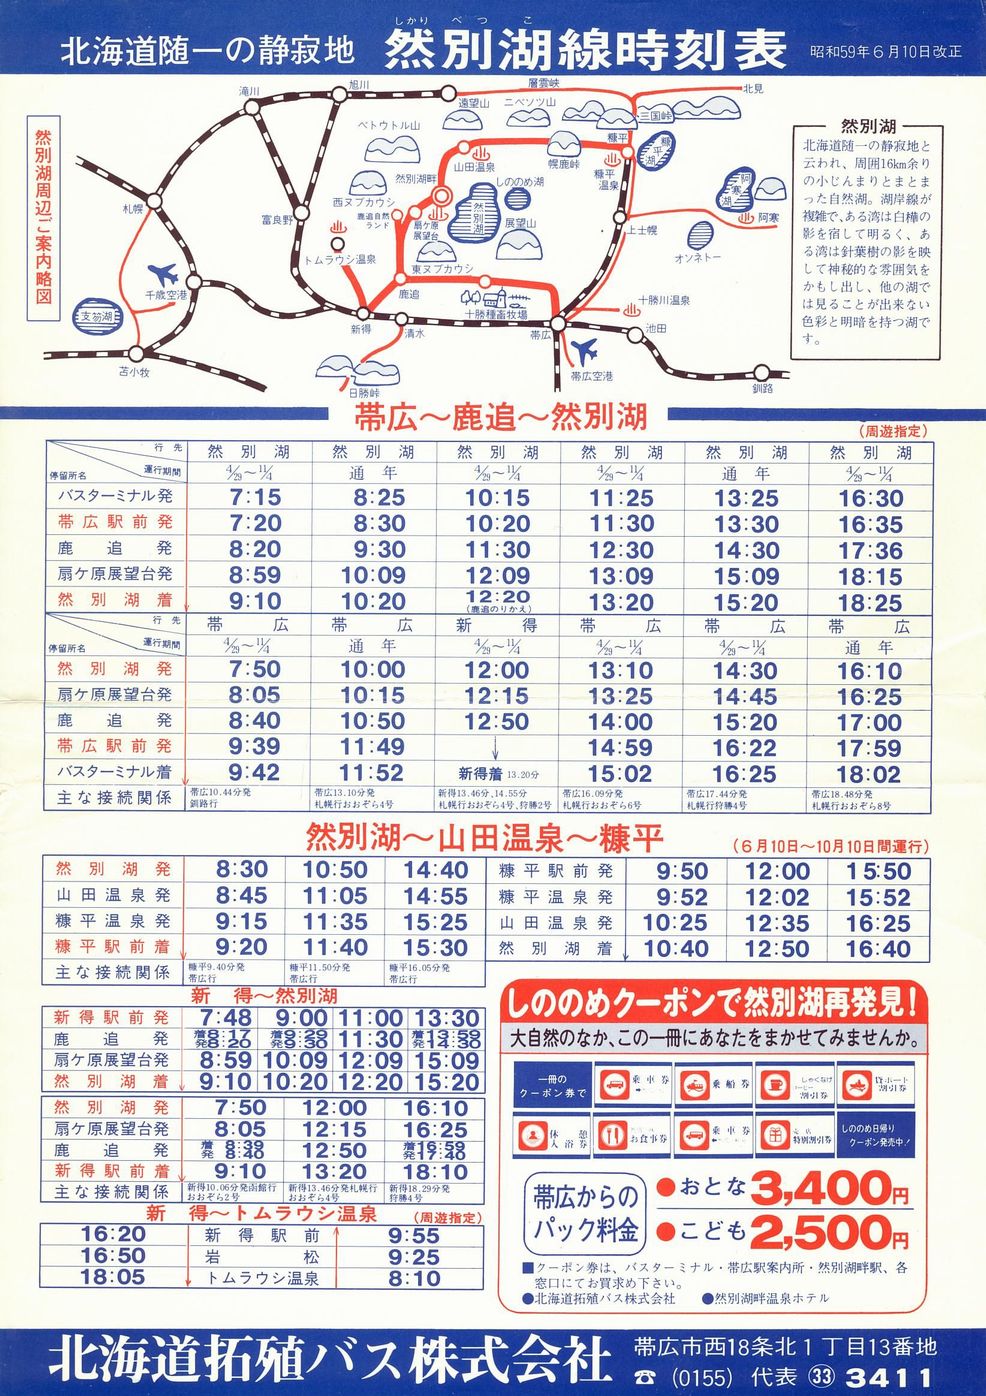 1984-06-10改正_北海道拓殖バス_然別湖線時刻表